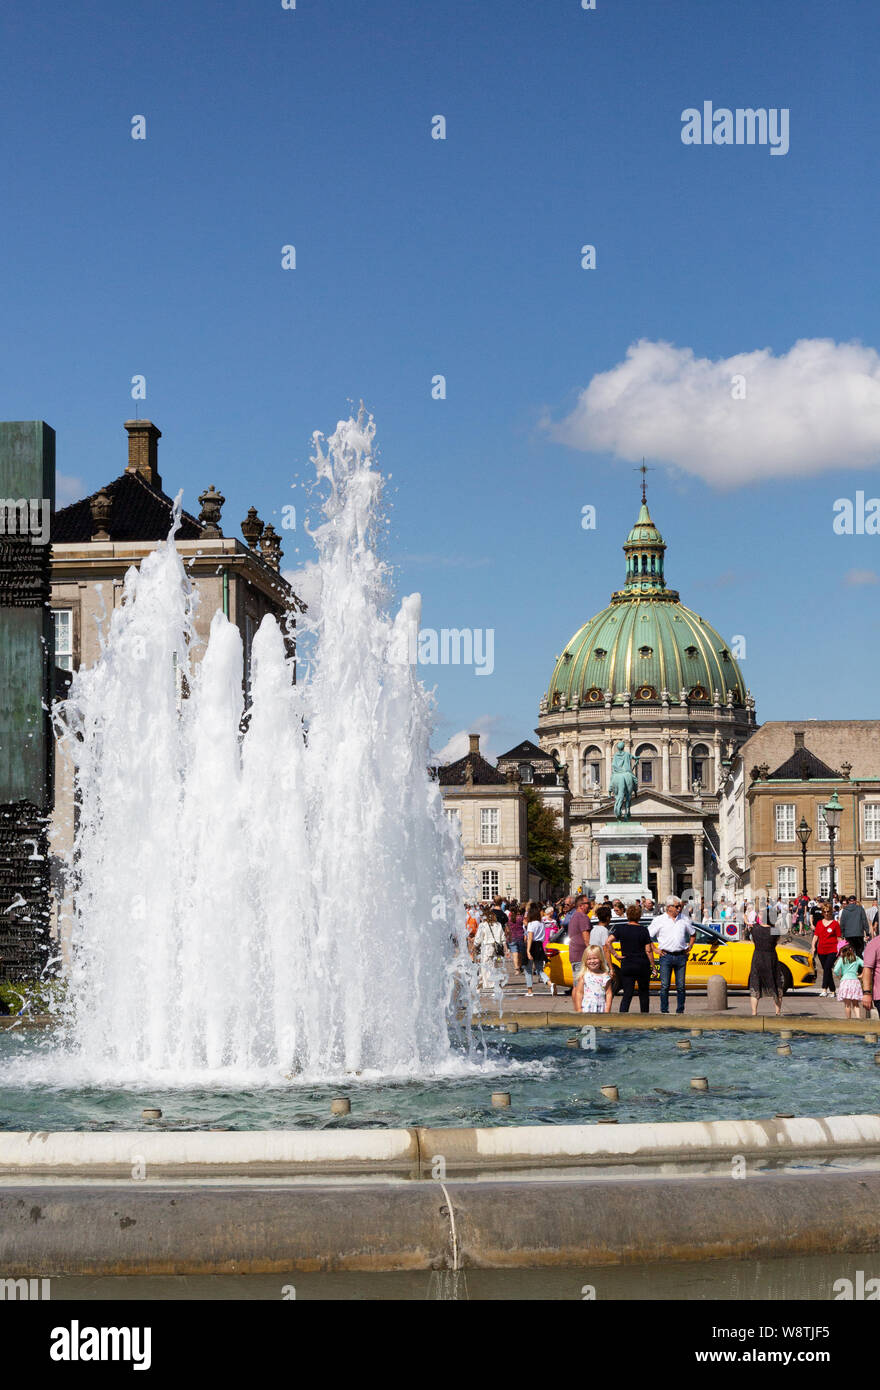 Le Palais d'Amalienborg - Palais du xviie siècle, le foyer de la famille royale danoise ; fontaine, et Frederik's Church dome,Danemark Copenhague Scandinavie Europe Banque D'Images